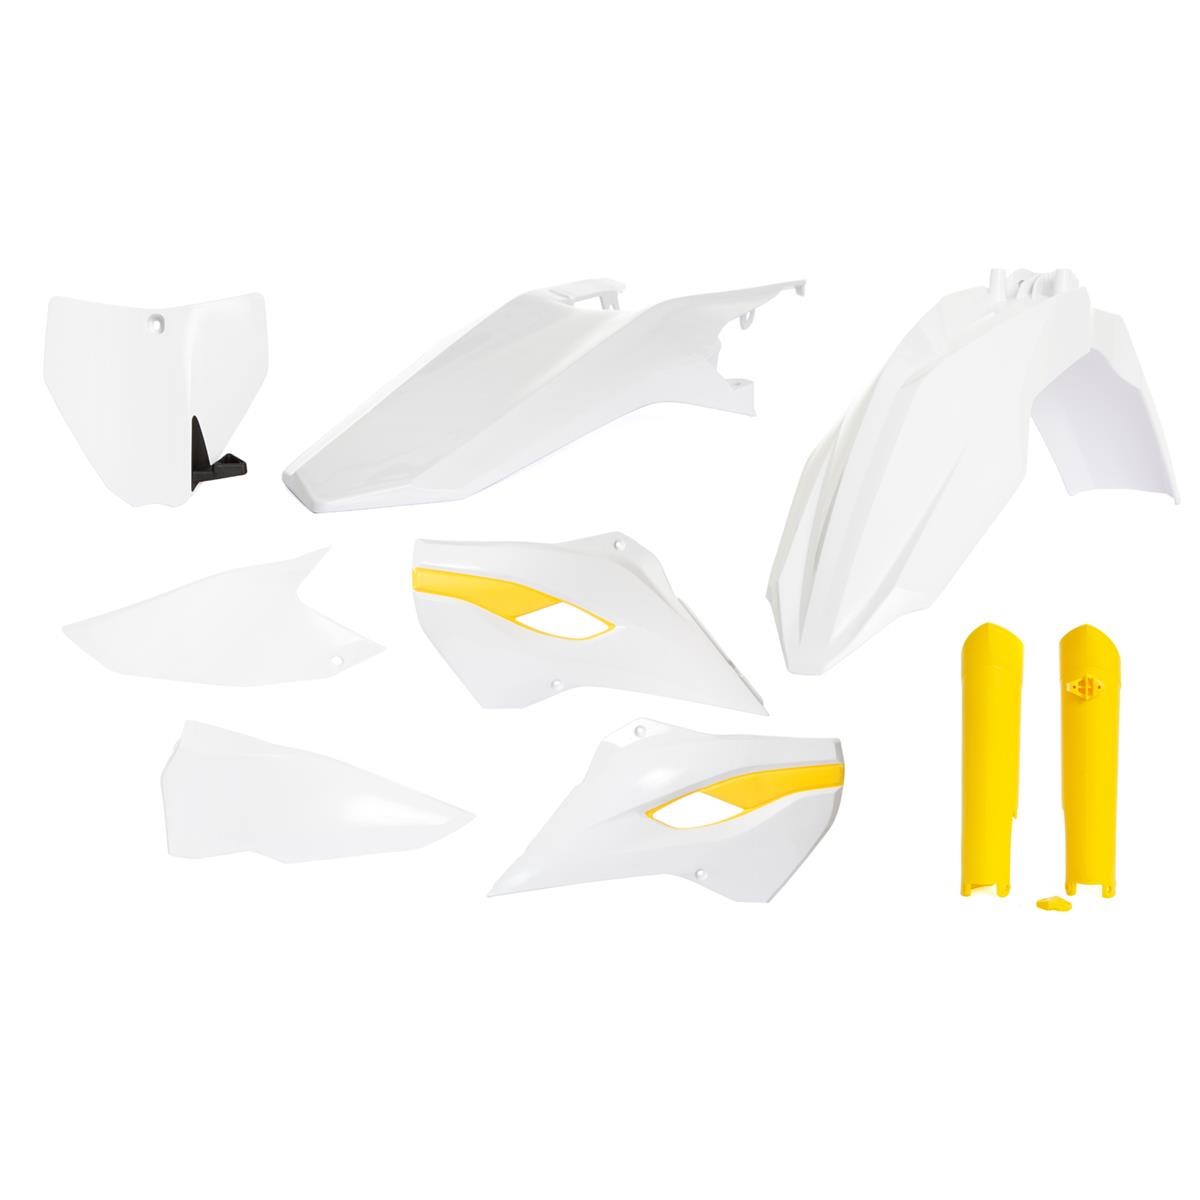 Acerbis Kit Plastiche completo Full-Kit Husqvarna TE/FE 2015, Replica, Bianco